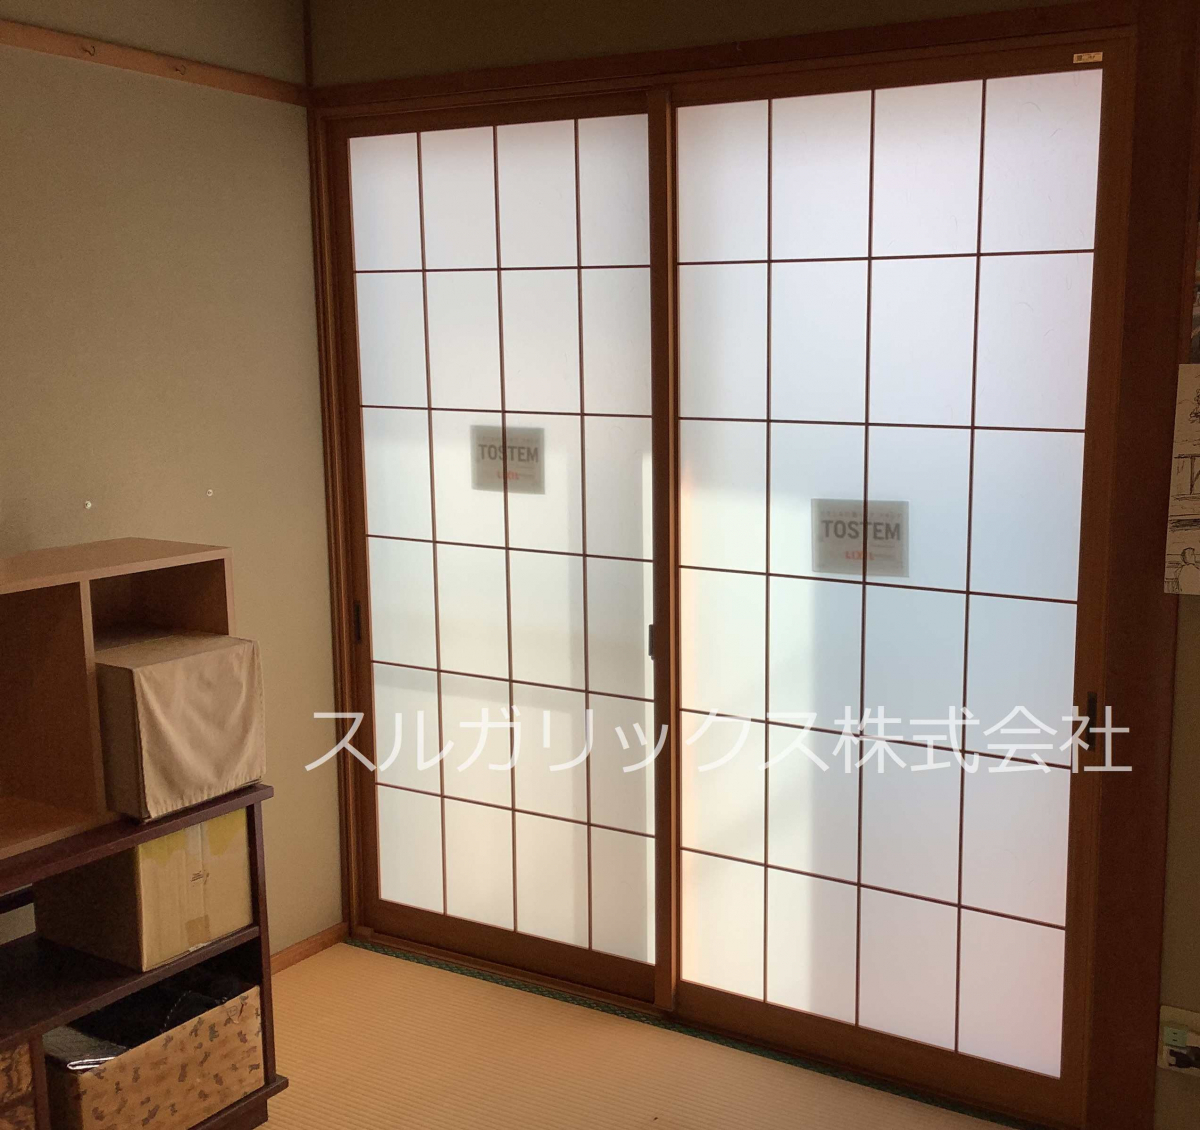 スルガリックス 静岡店の和室の障子を内窓に替えたいの施工後の写真1